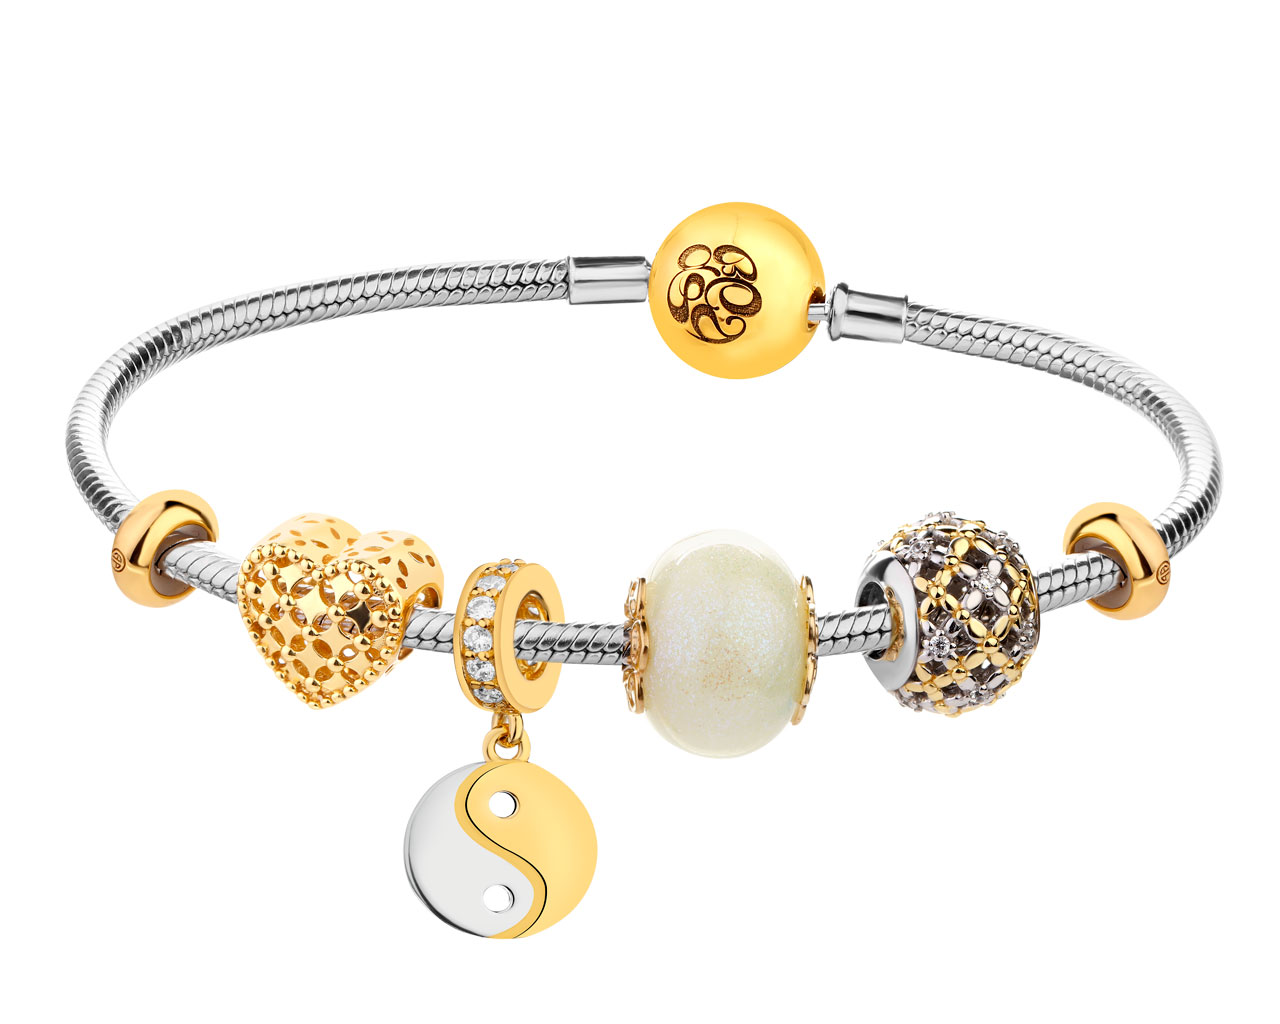 Stříbrný náramek beads - sada - květy, srdce, yin-yang